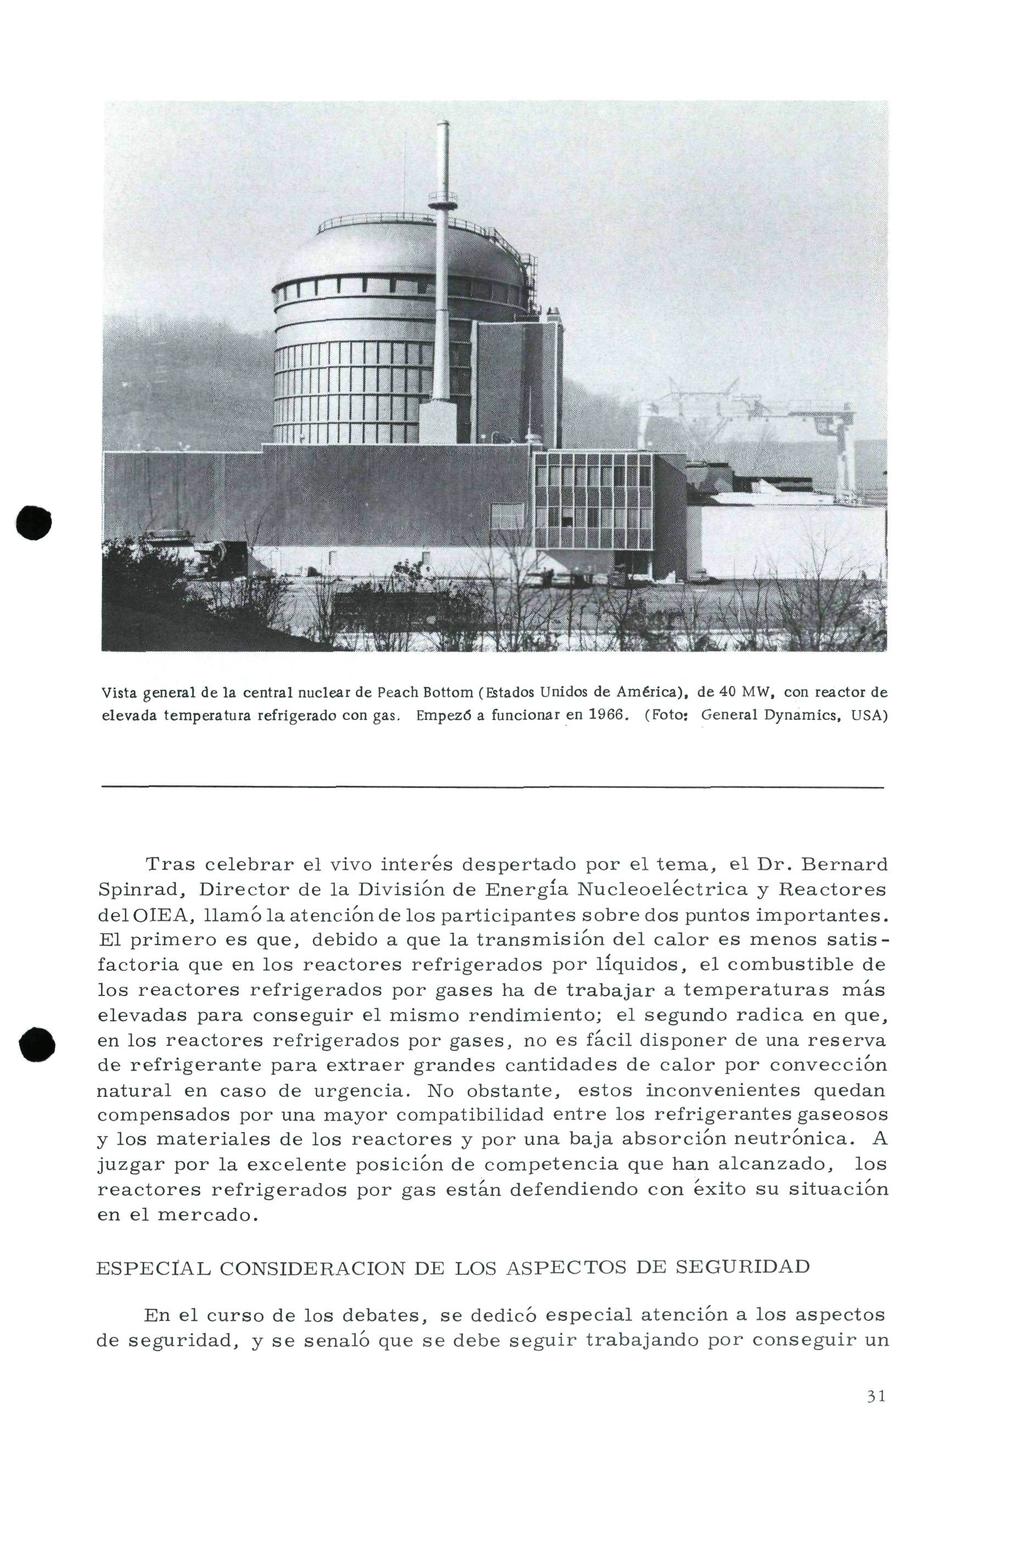 Vista general de la central nuclear de Peach Bottom (Estados Unidos de América), de 40 MW, con reactor de elevada temperatura refrigerado con gas. Empezó a funcionar en 1966.